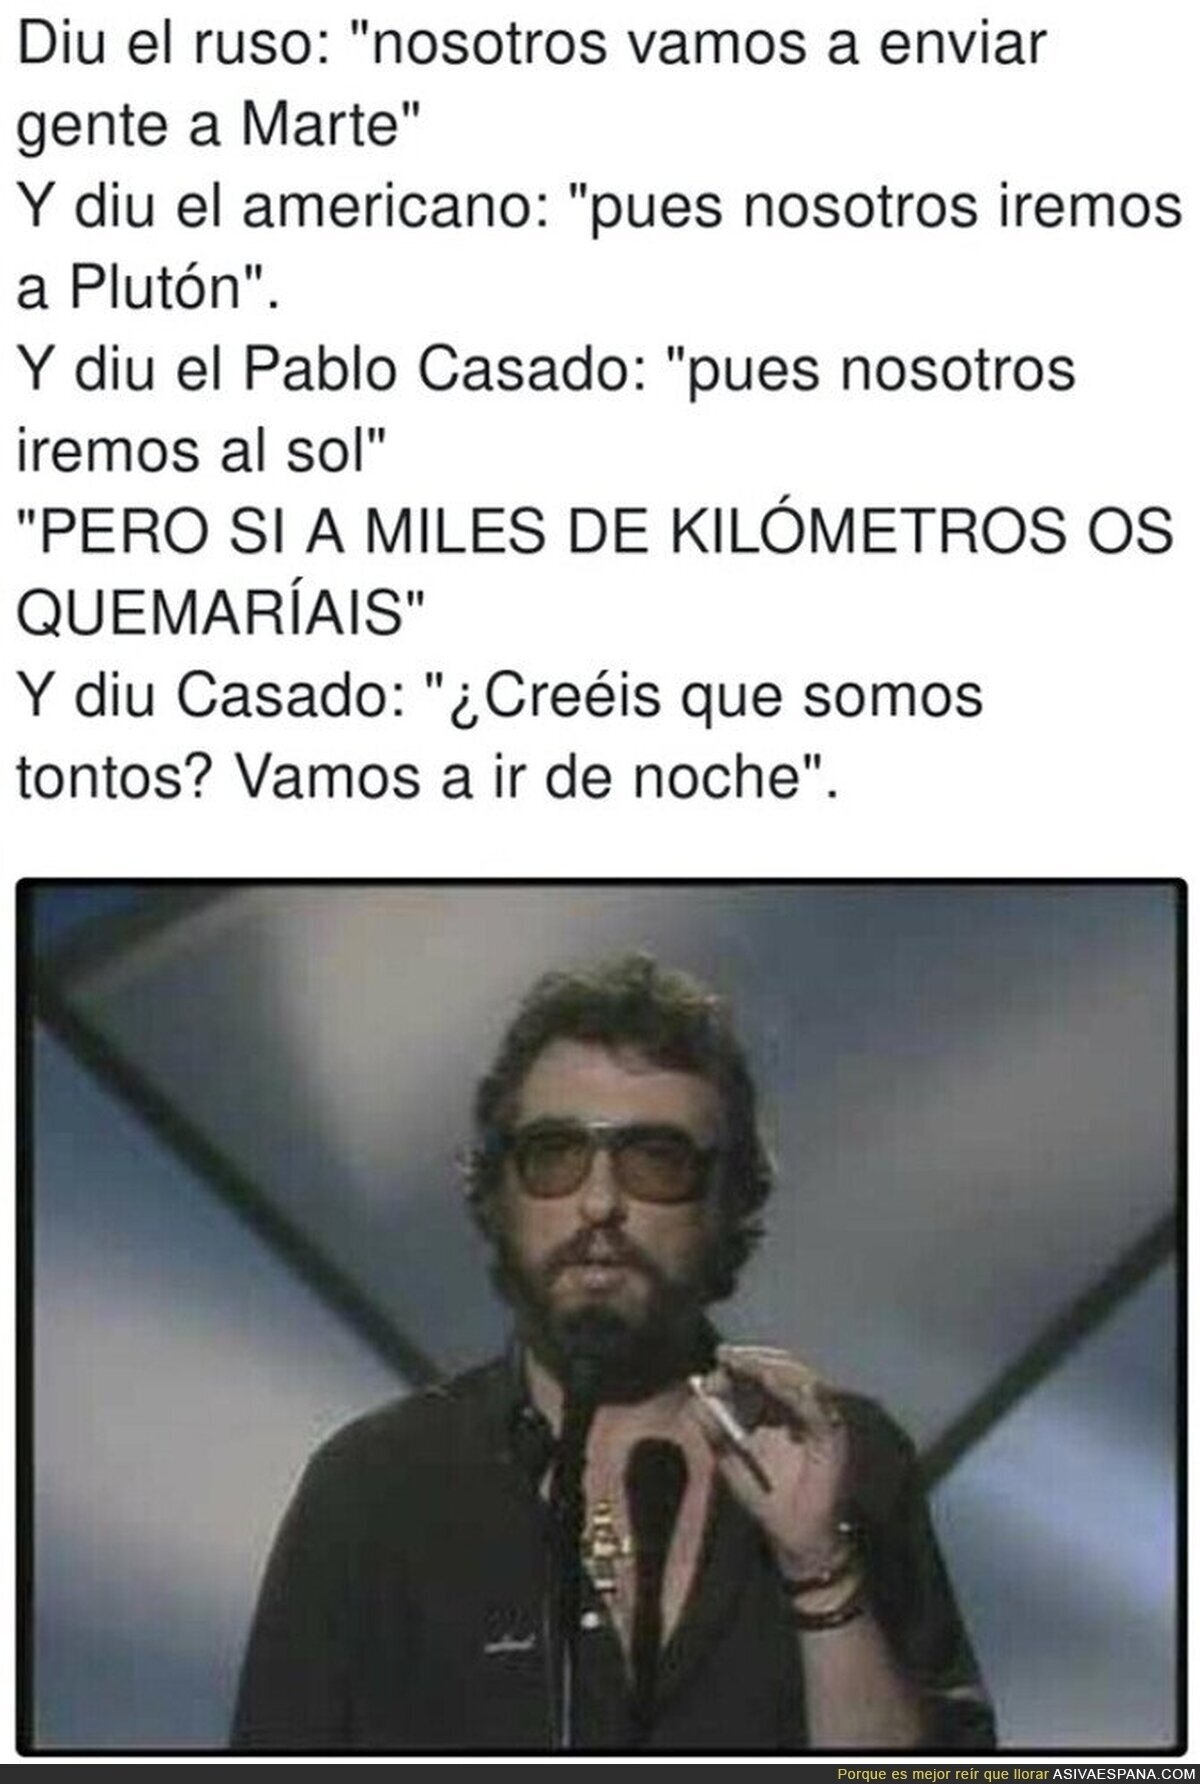 Pablo Casado es un meme andante